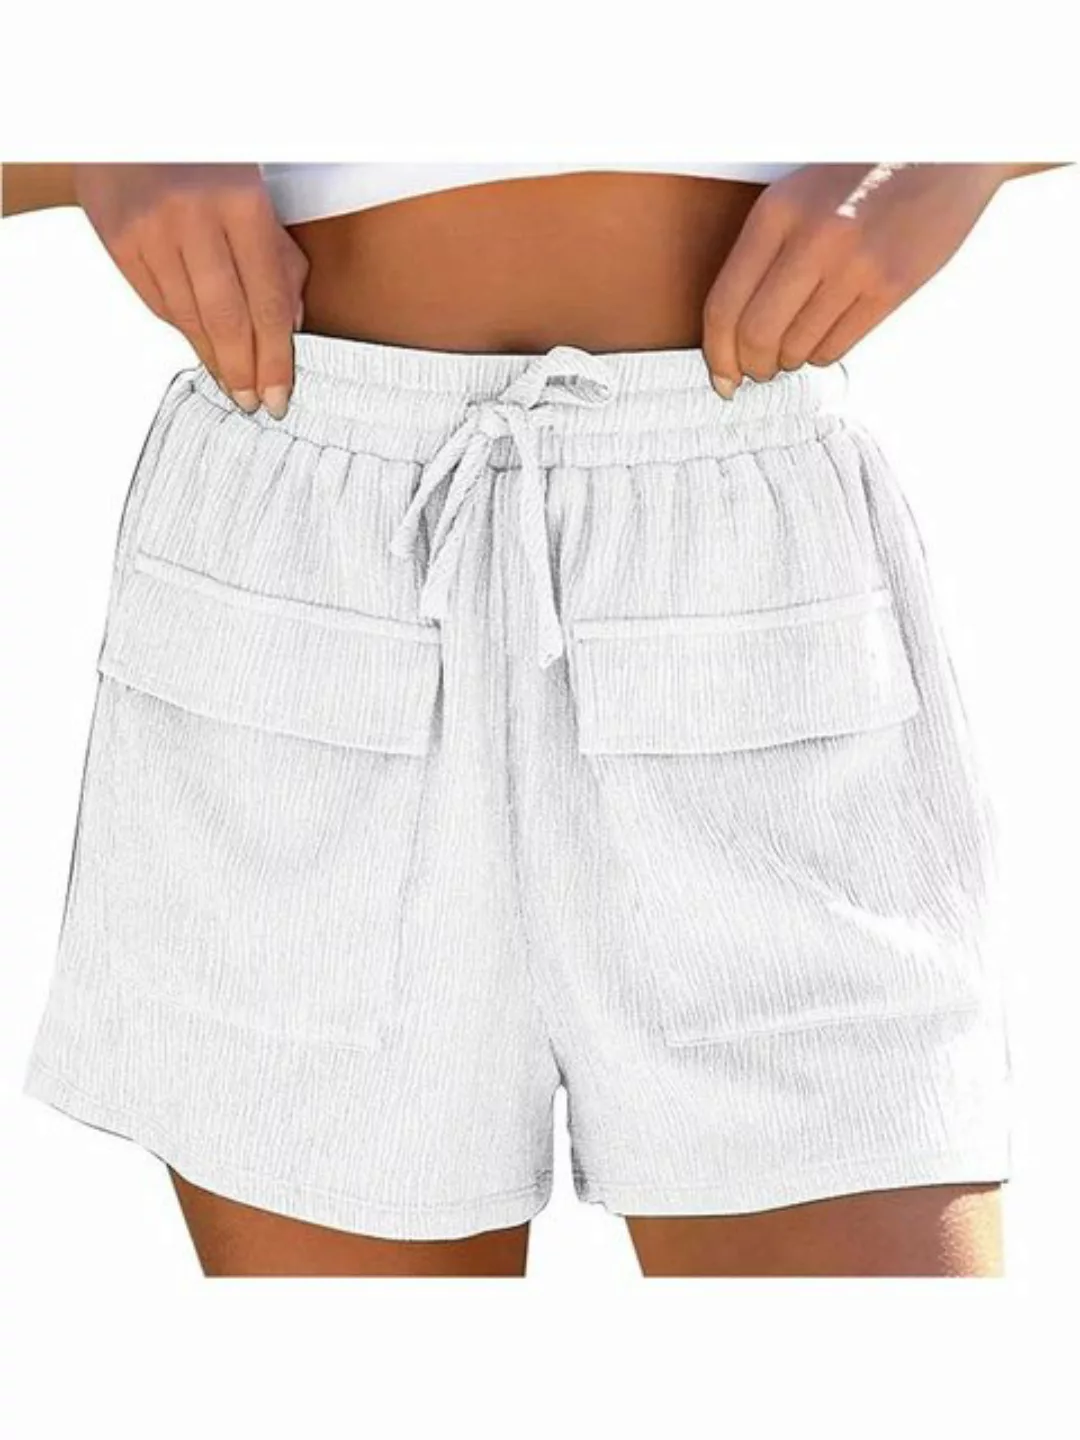 KIKI Strandshorts Shorts Damen Sommer Beach Shorts Mit Taschen Mode Sport S günstig online kaufen